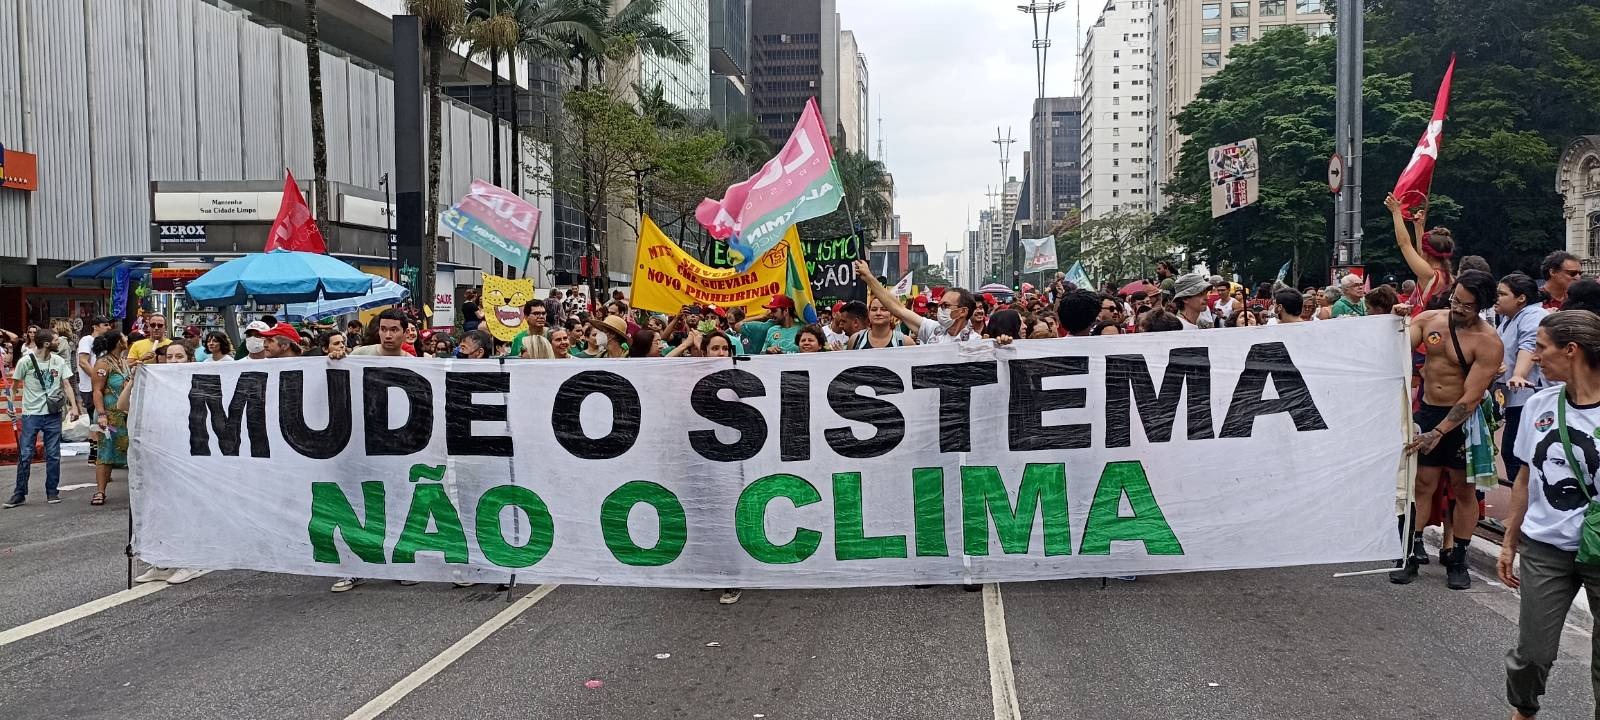 Protesto na paulista, ativistas pelo clima erguem faixa escrito "mude o sistema não o clima" como ação direta criativa